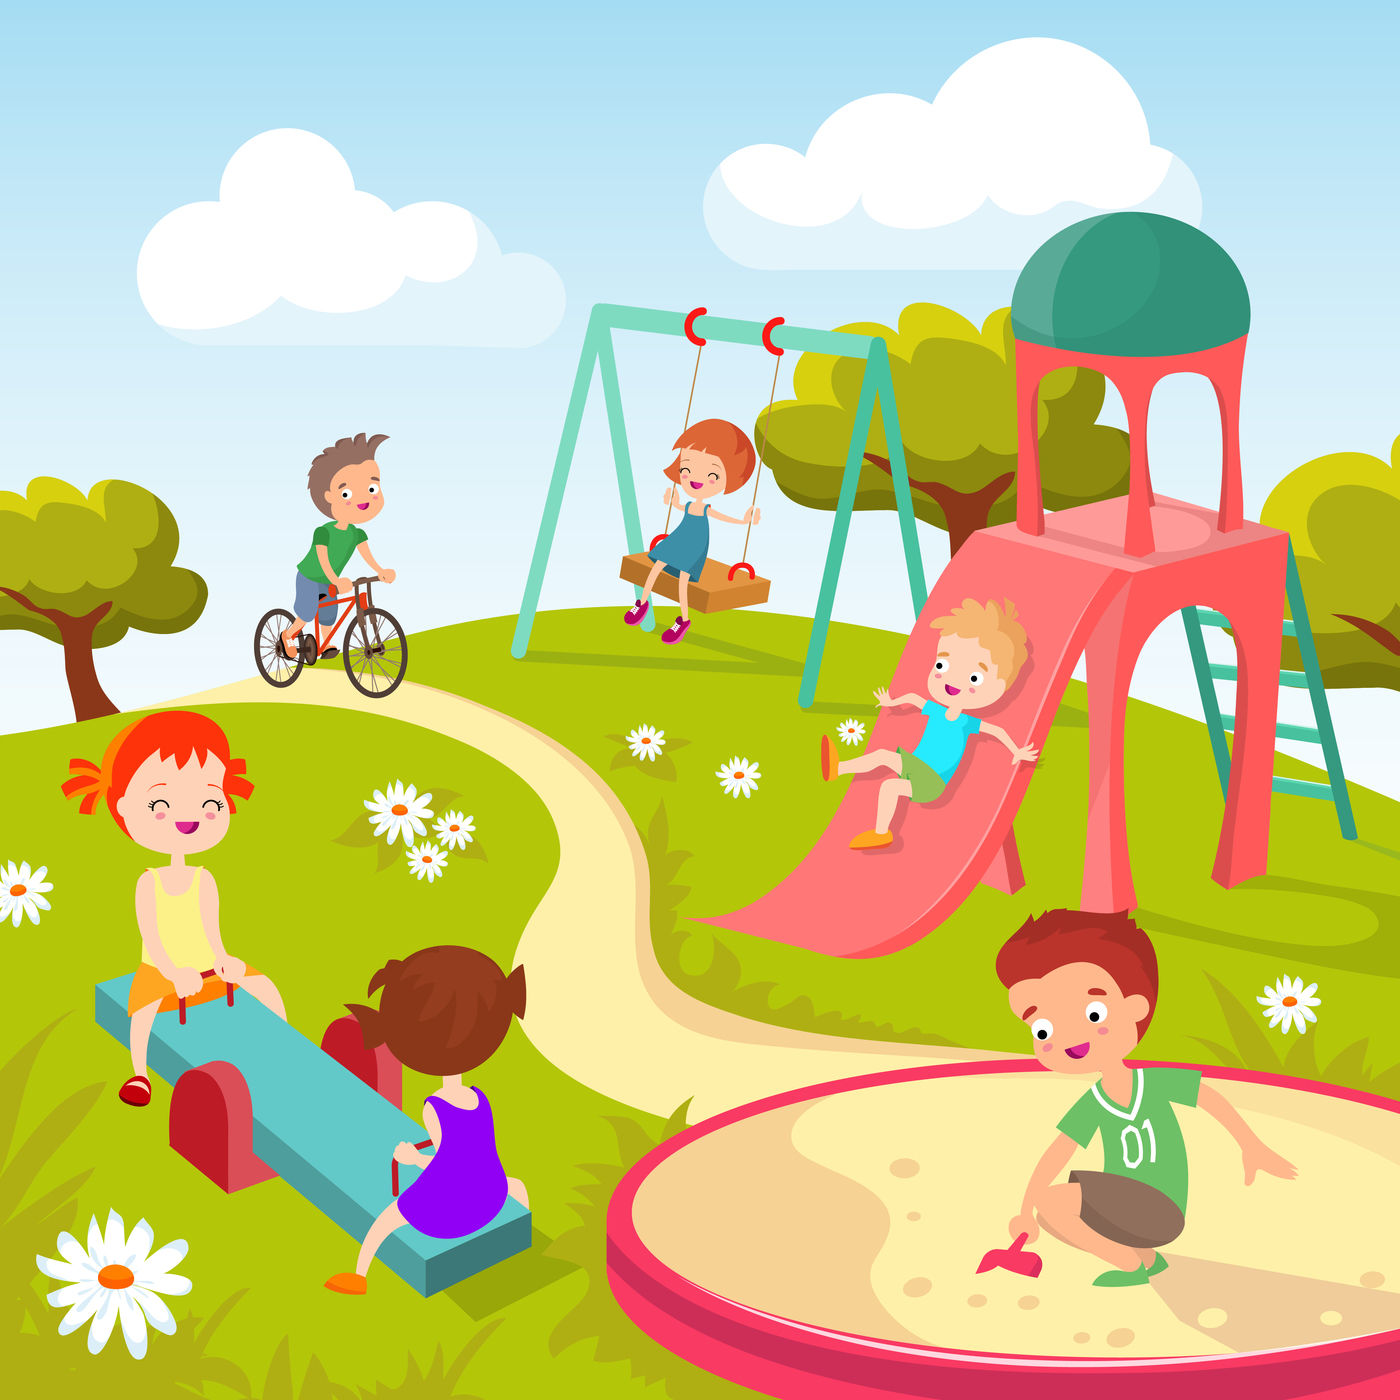 Cute children at playground. Happy children playing in summer park vec